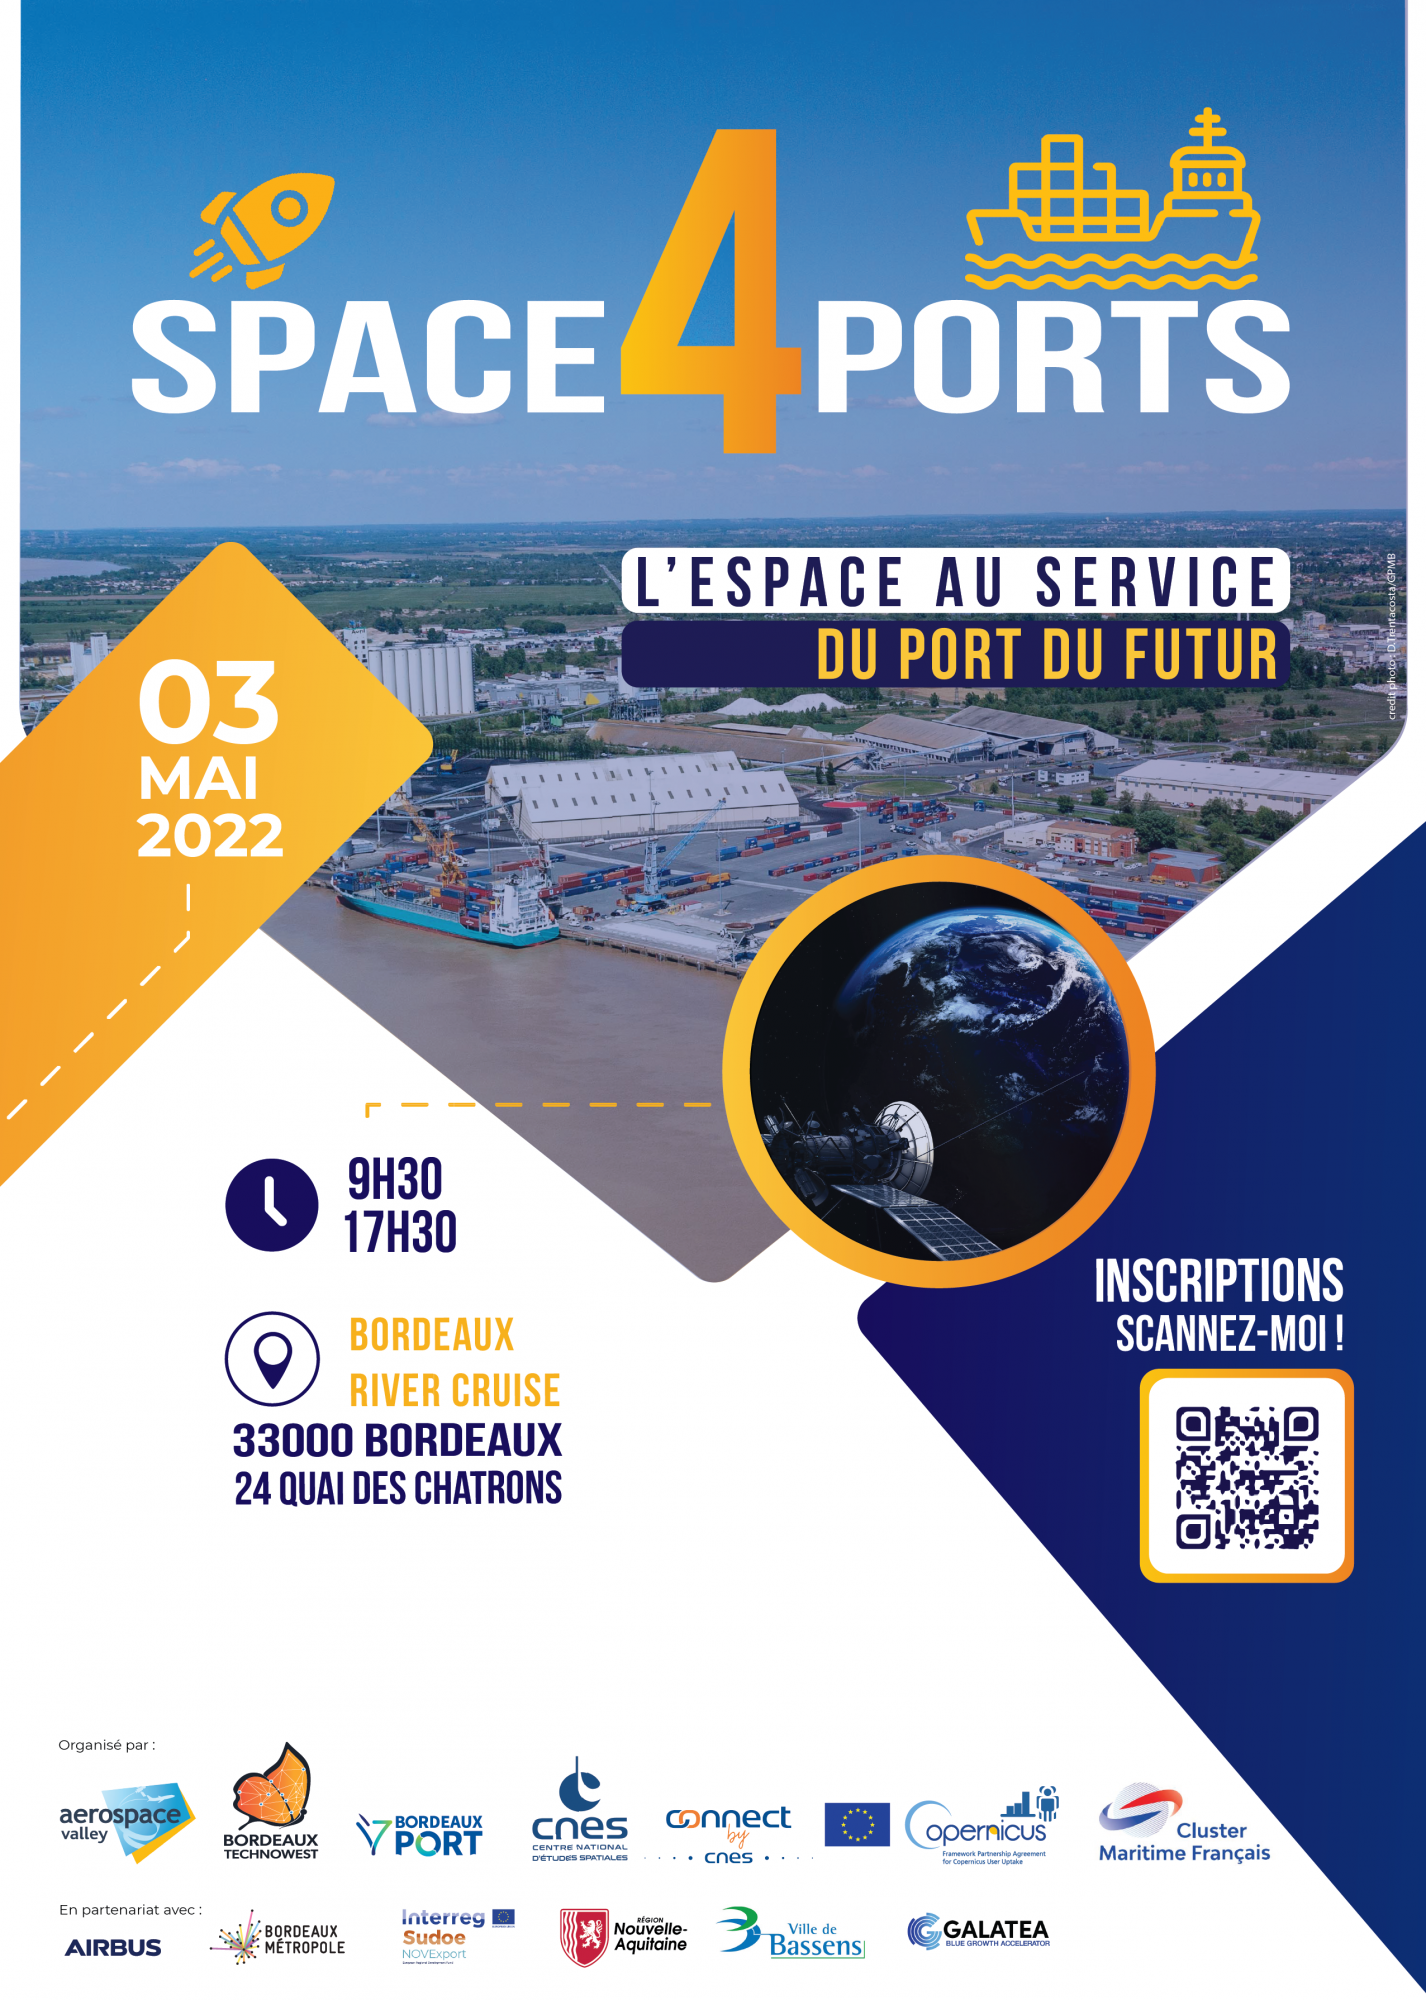 Space4Ports Bordeaux 2022